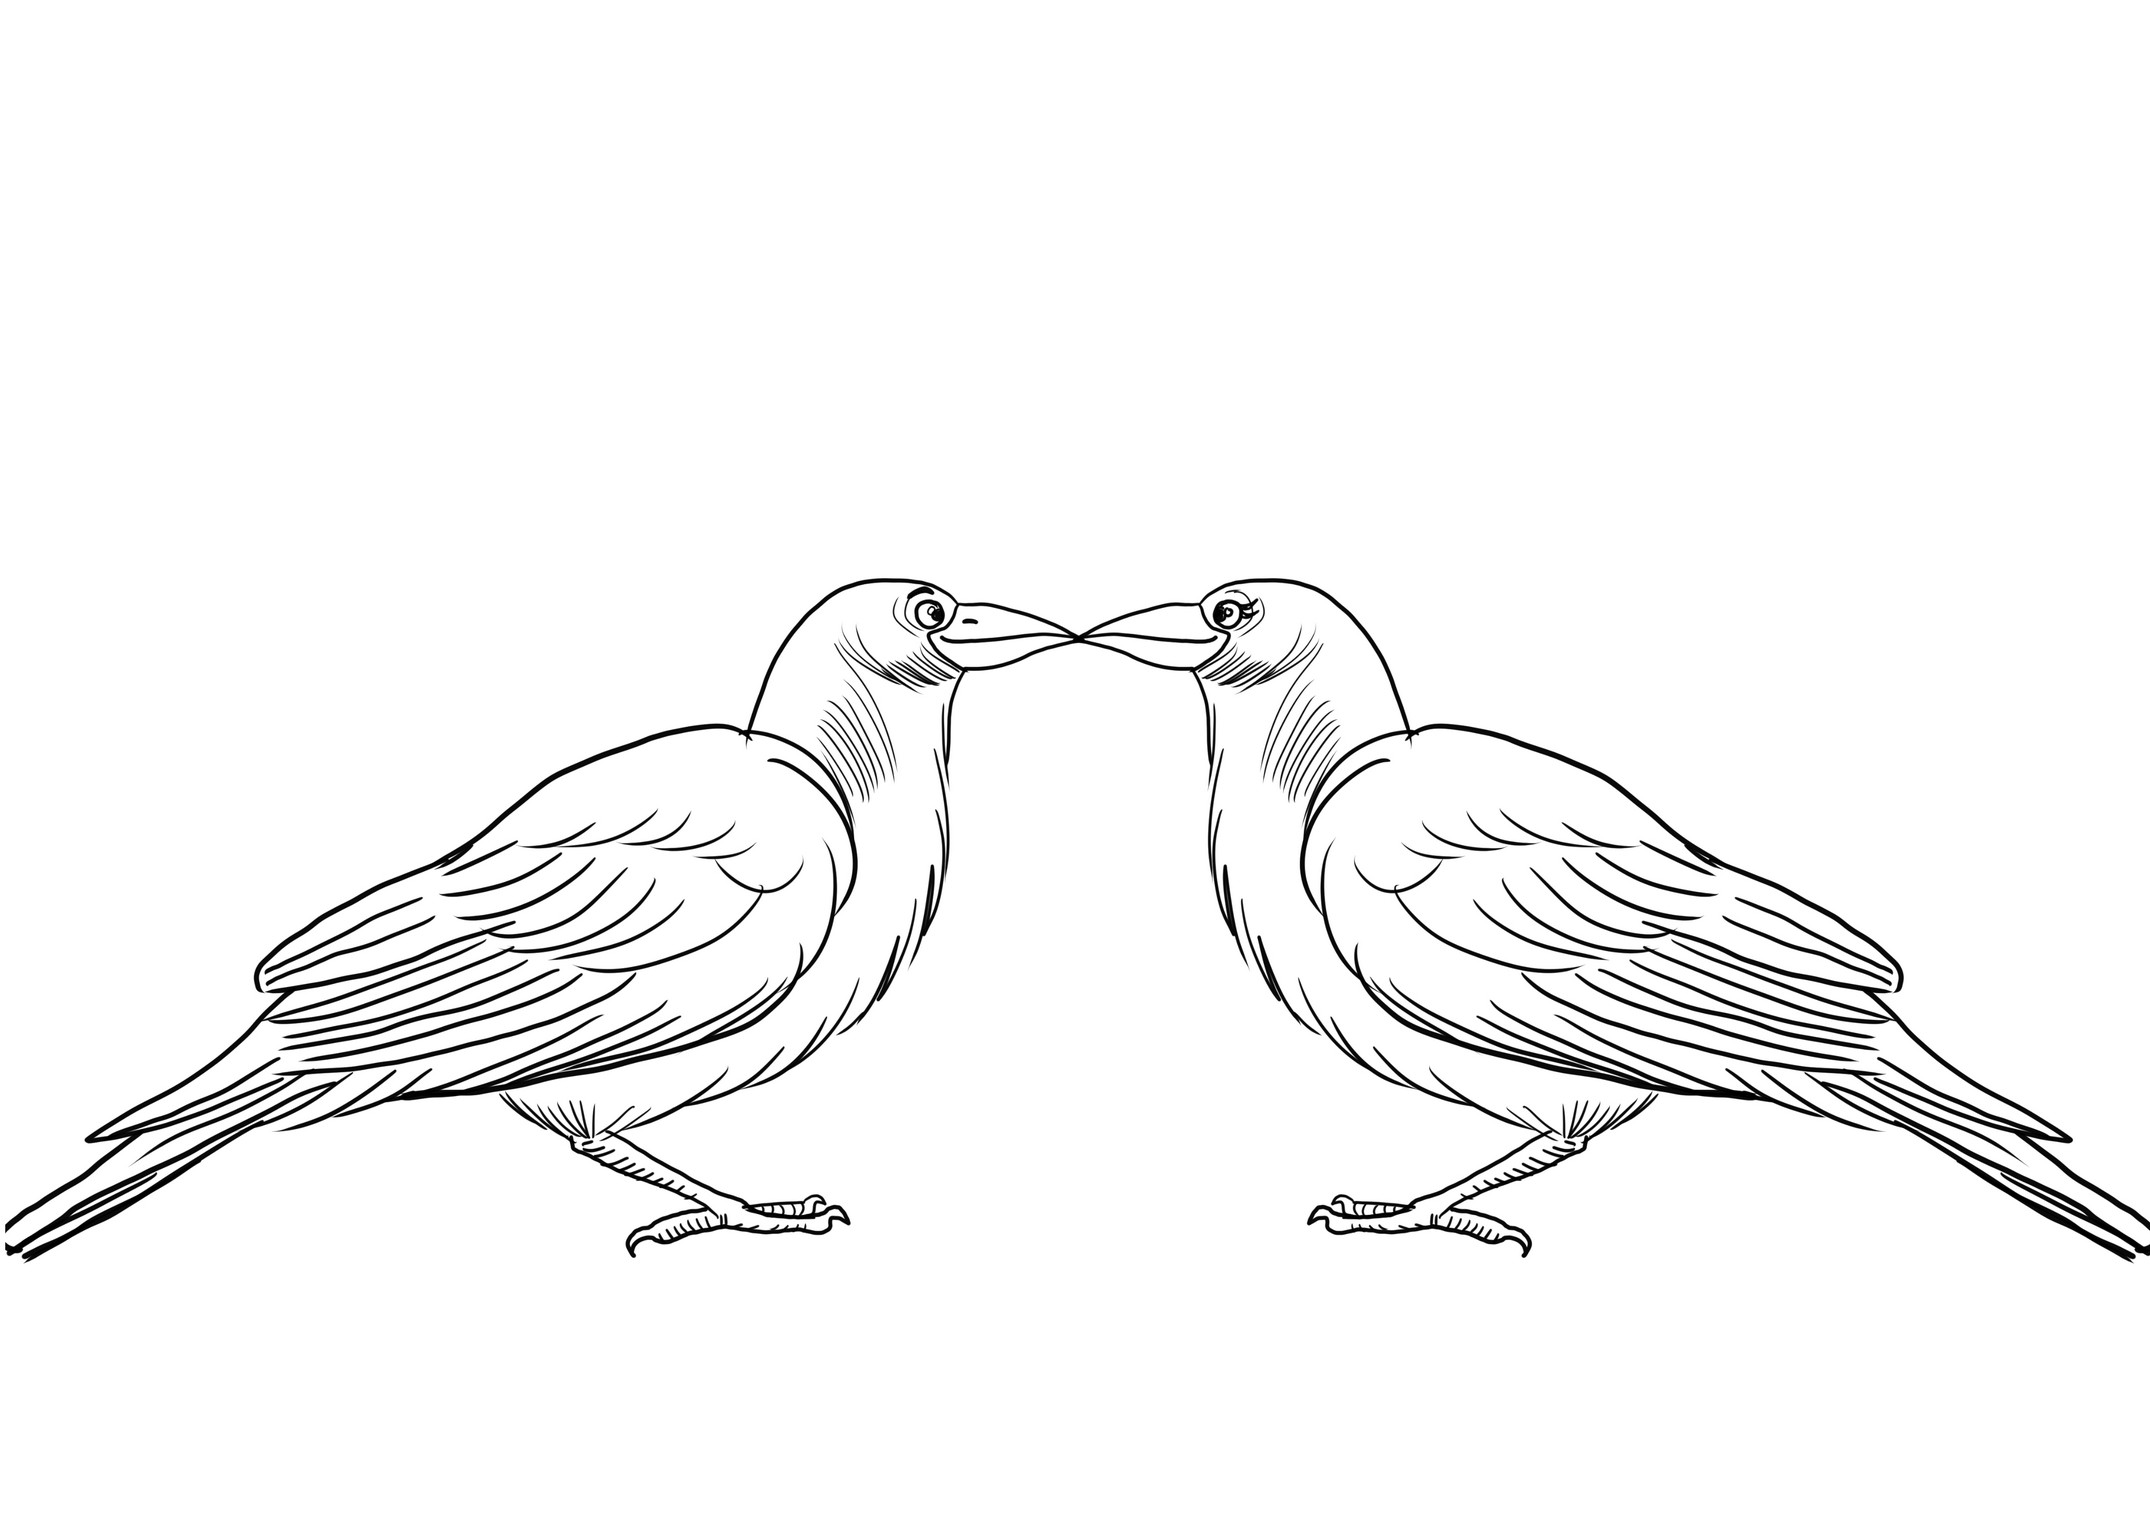 Disegno da colorare di coppia di corvi innamorati